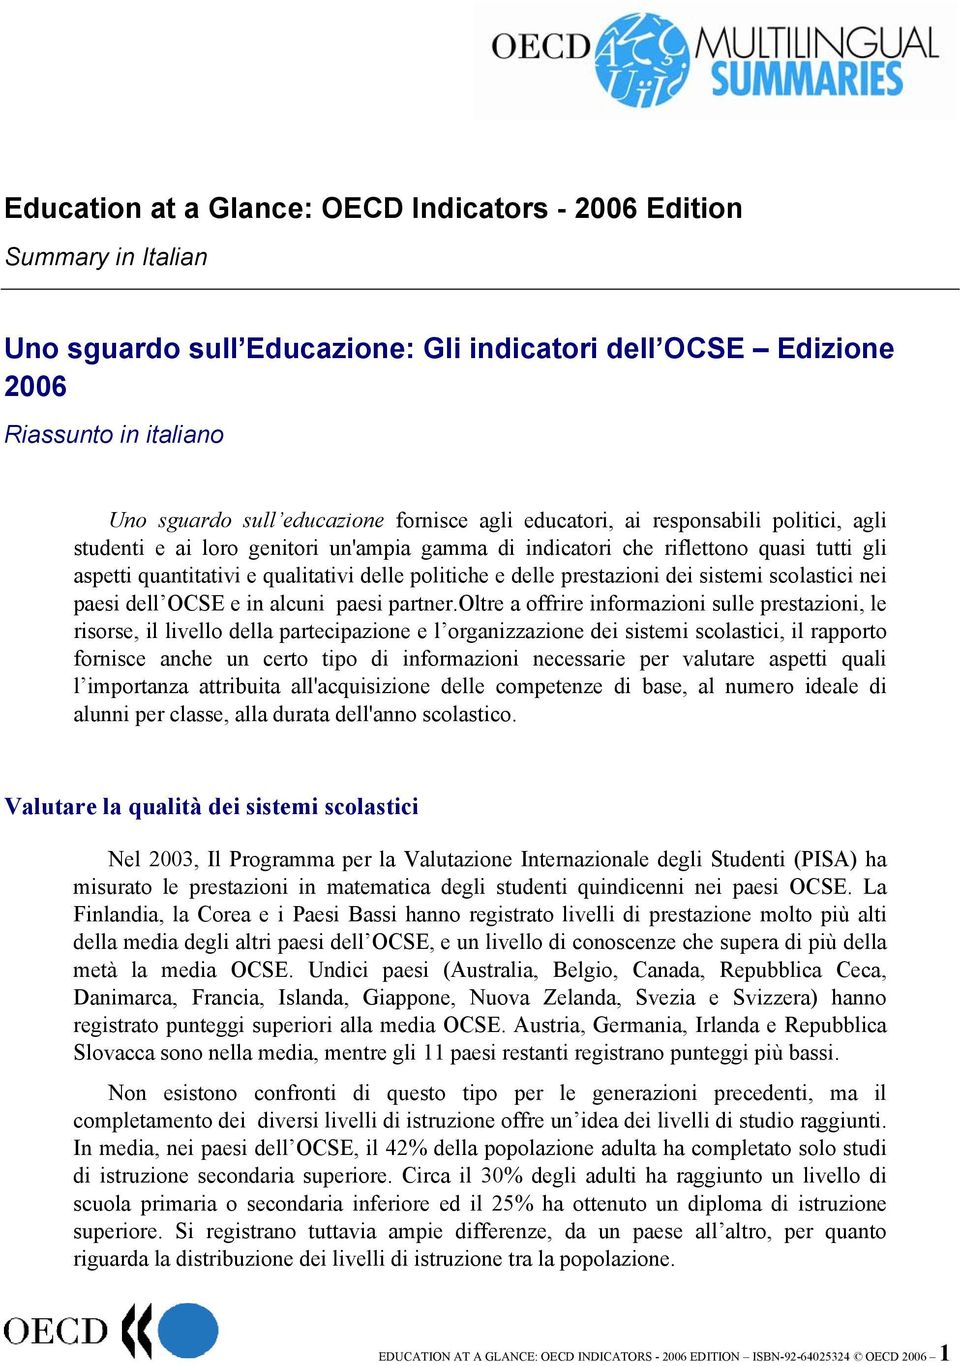 prestazioni dei sistemi scolastici nei paesi dell OCSE e in alcuni paesi partner.